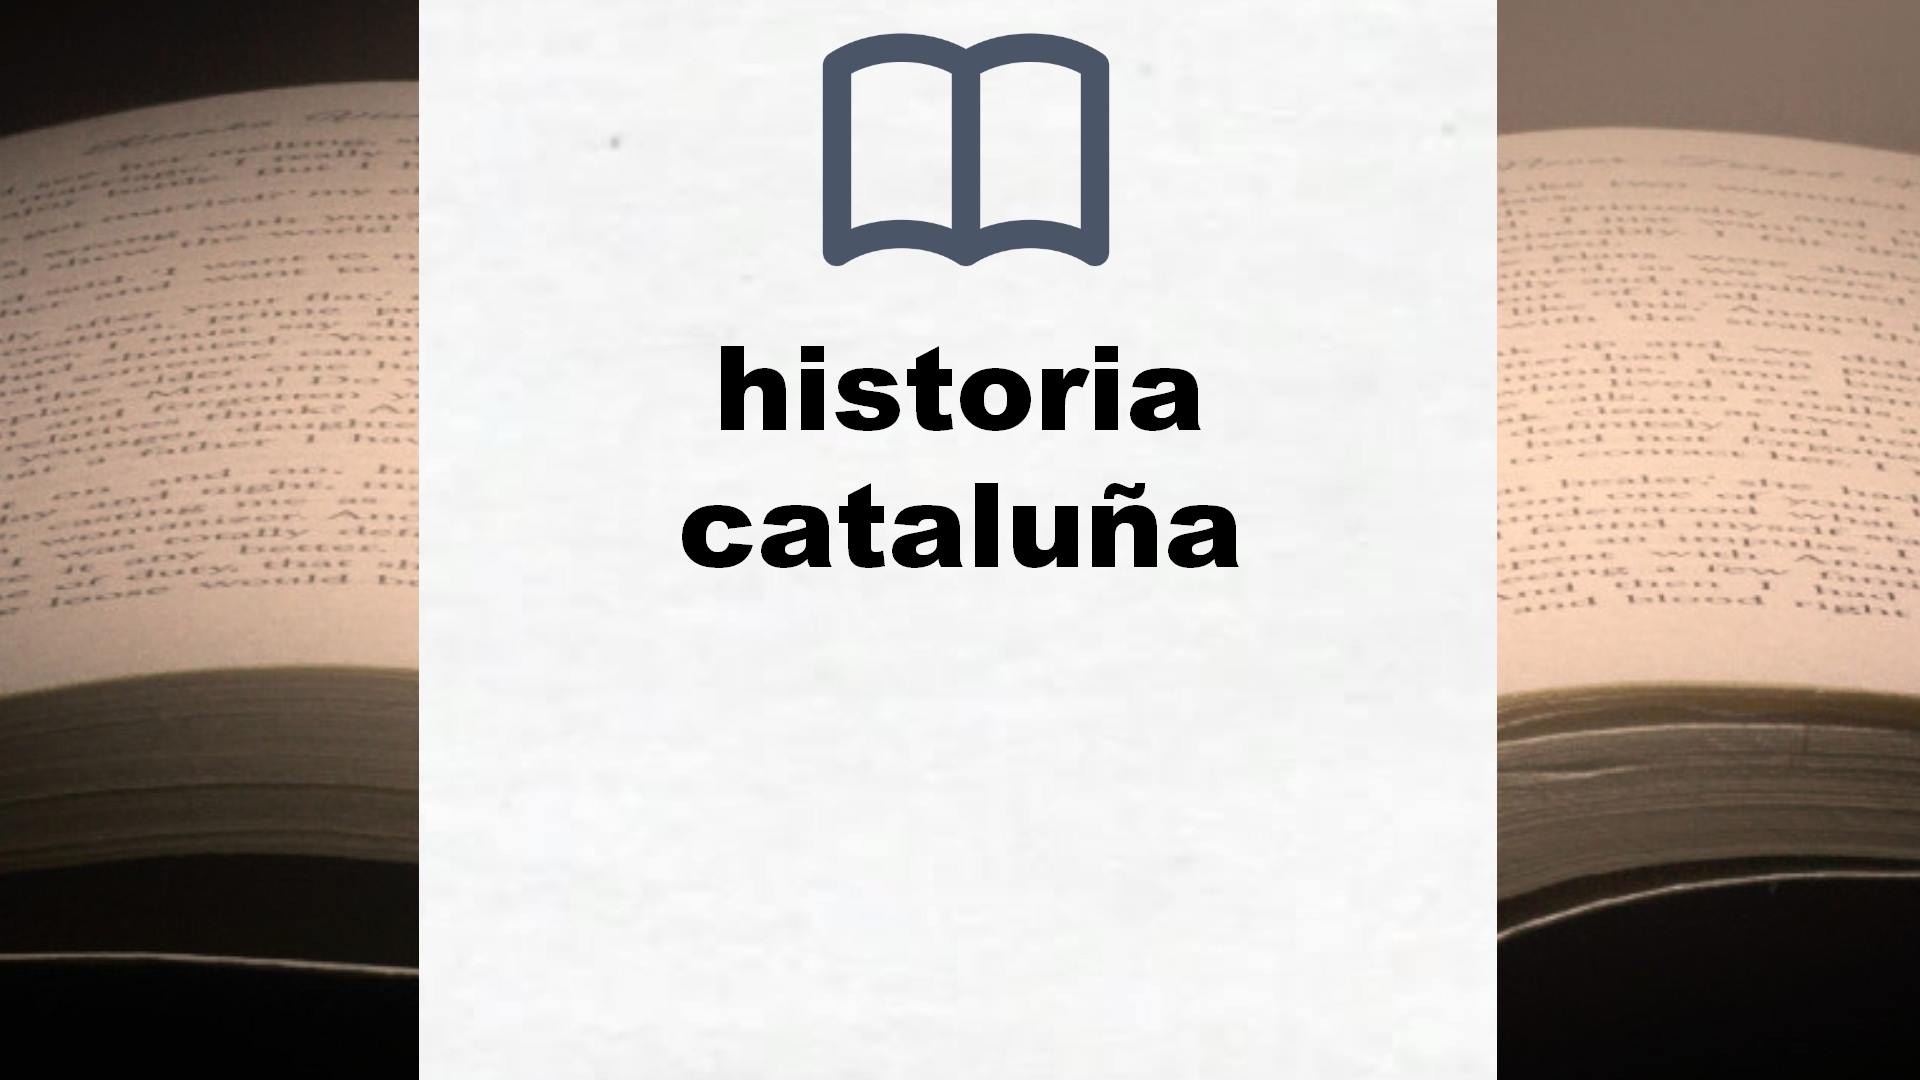 Libros sobre historia cataluña